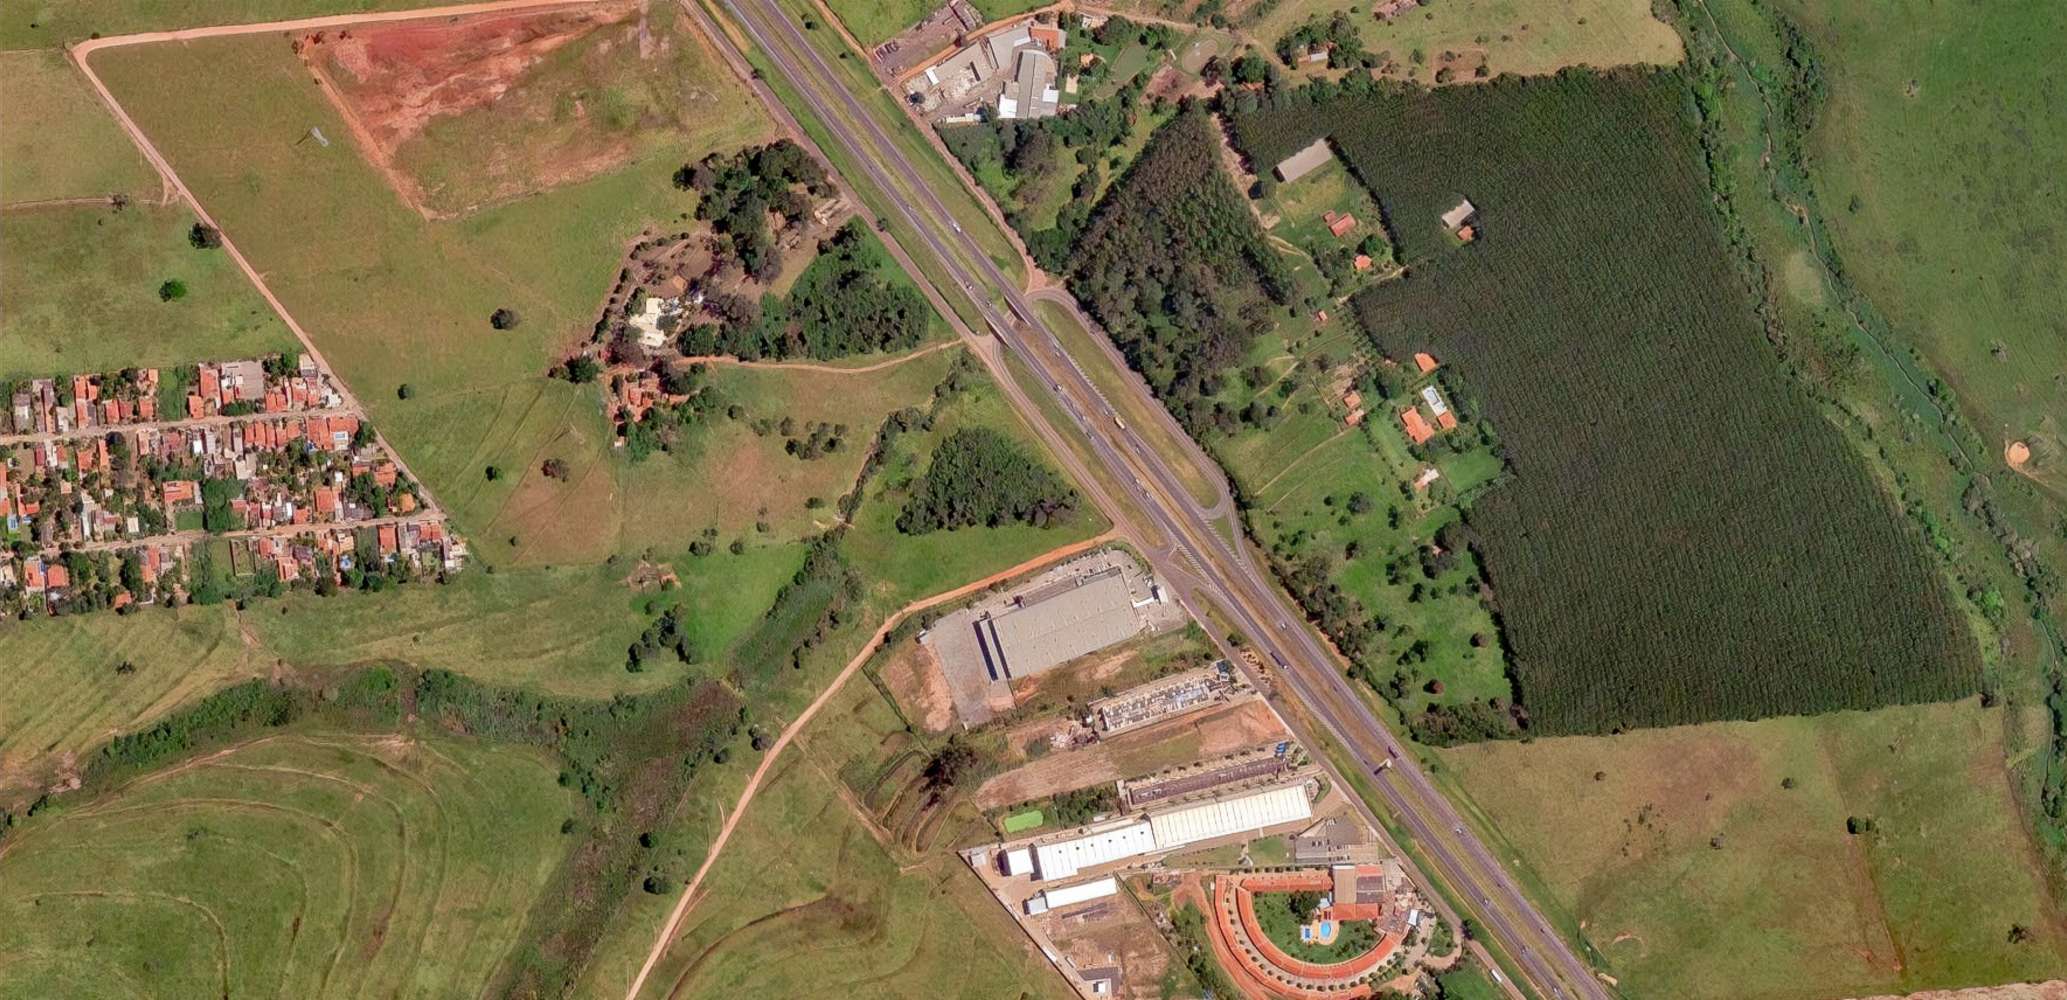 Terreno São josé do rio preto, 15130000 - Área para Desenvolvimento em São José do Rio Preto